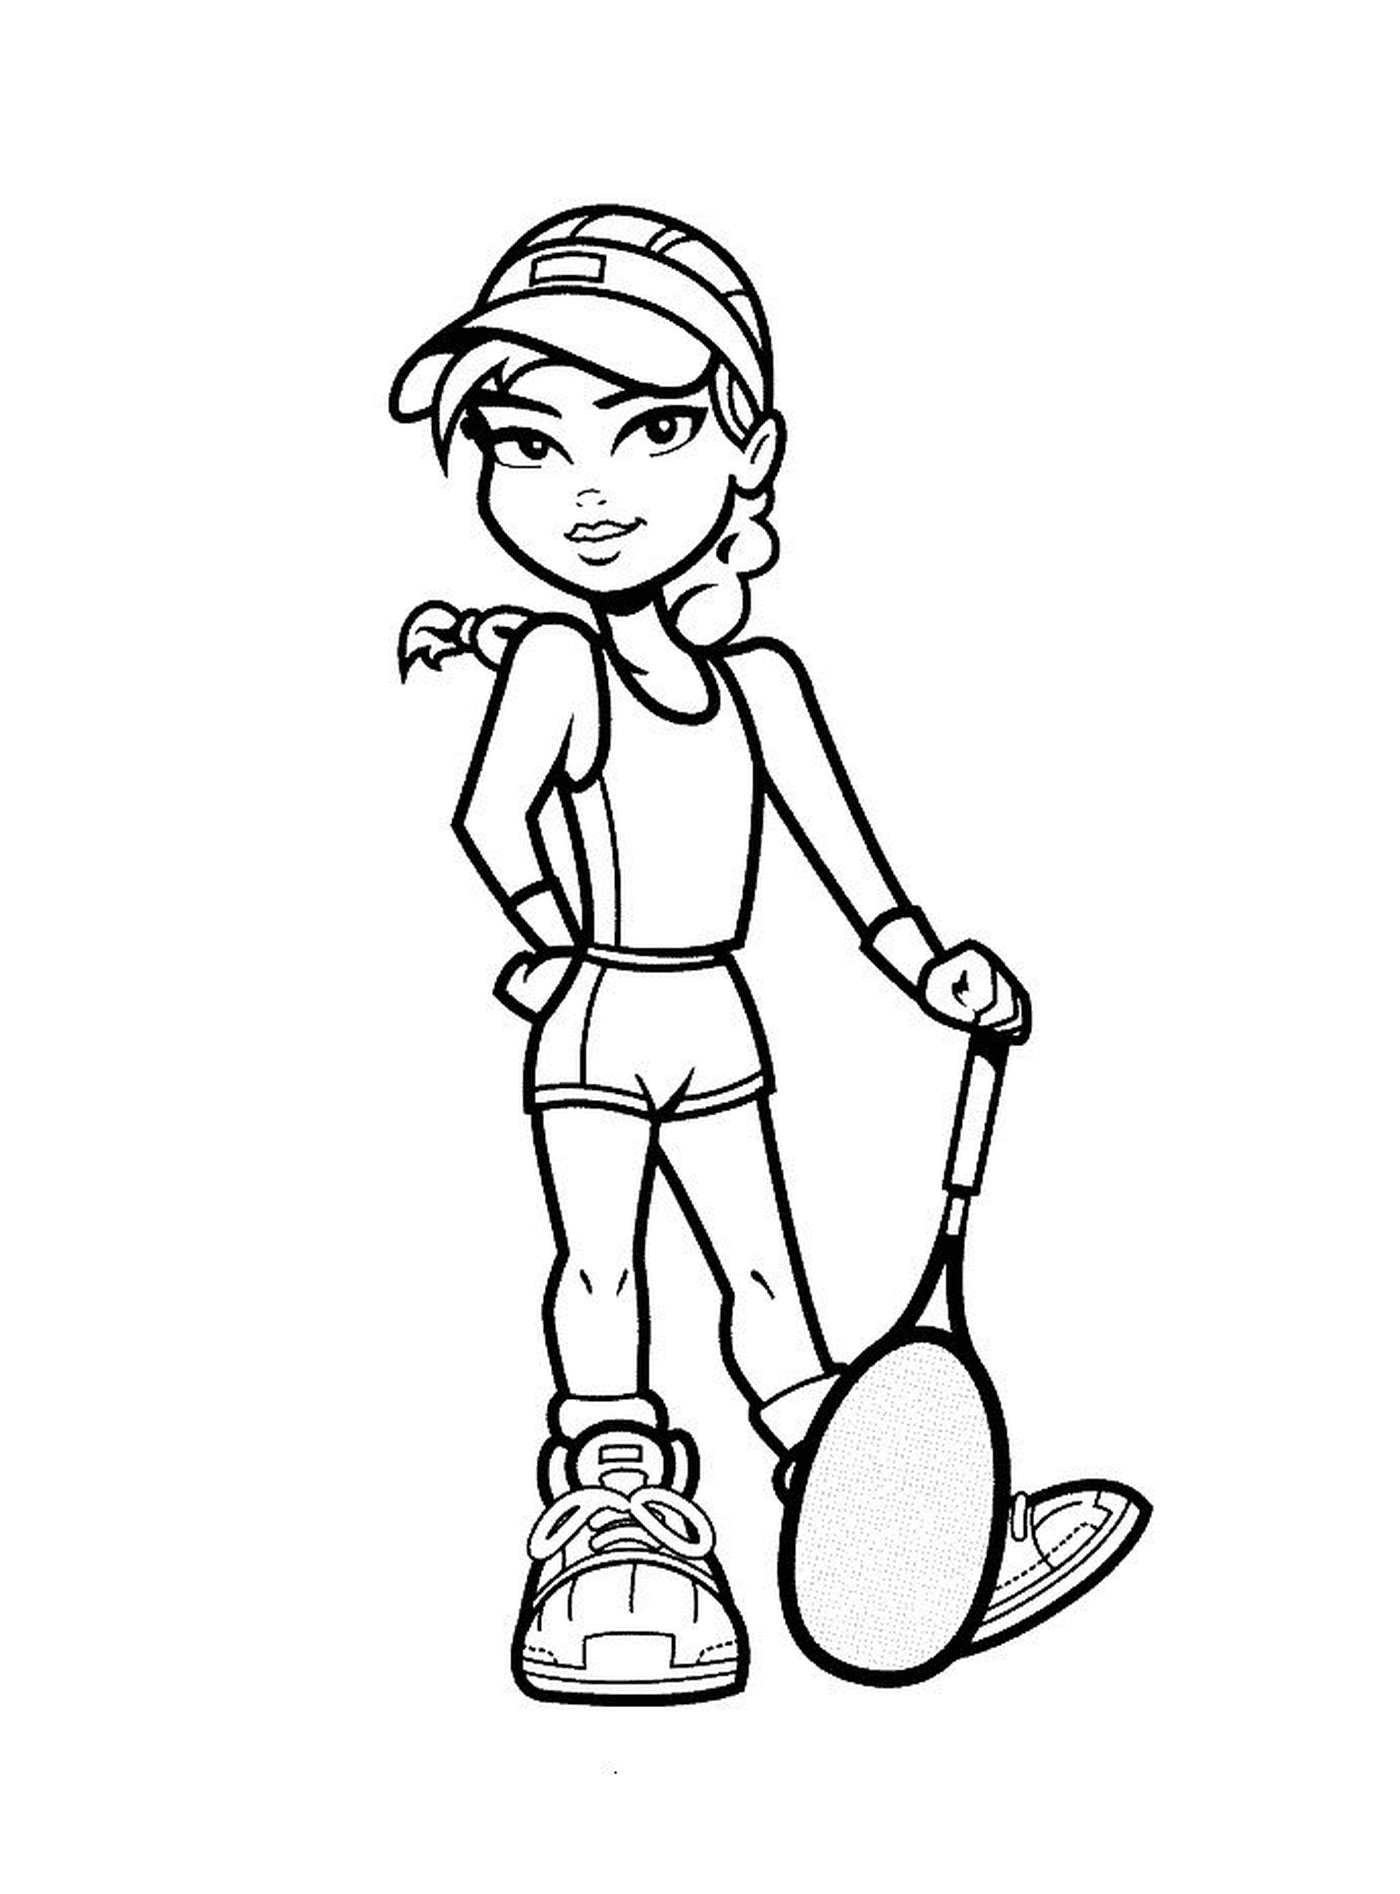   Une fille joue au tennis 